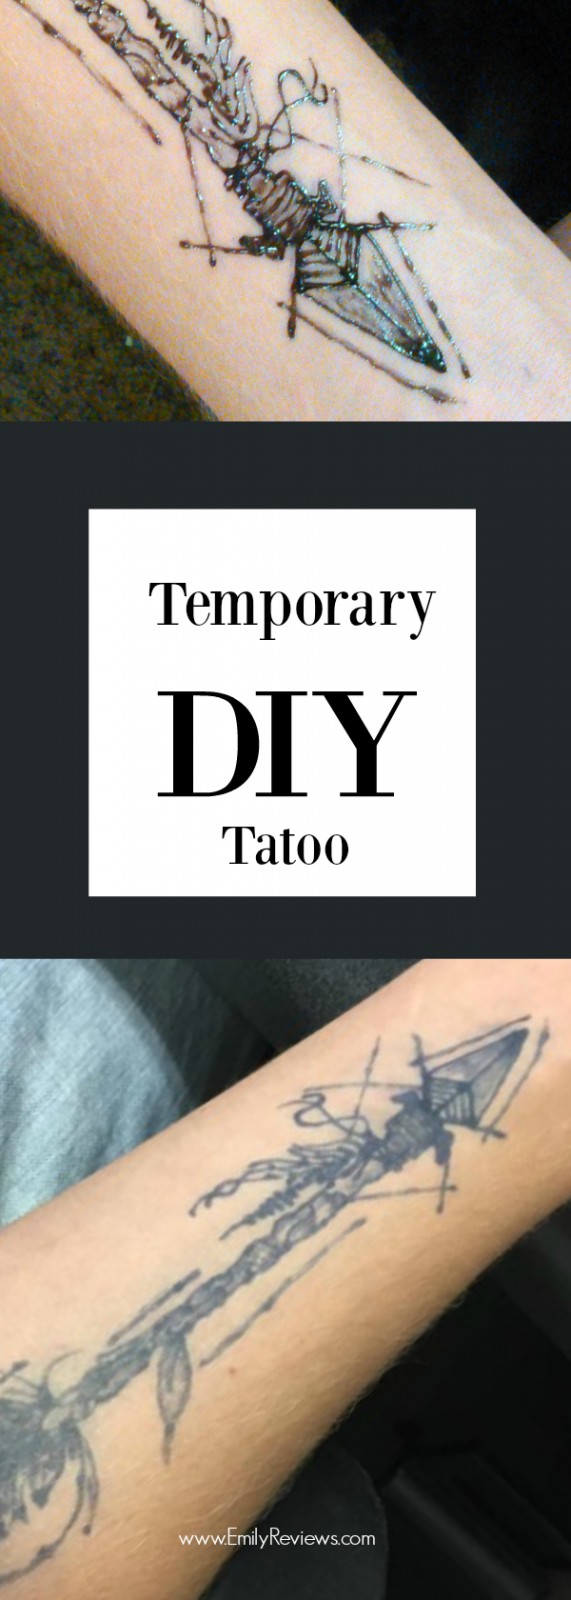 DIY Temporary tattoo tutorial | Emily Reviews